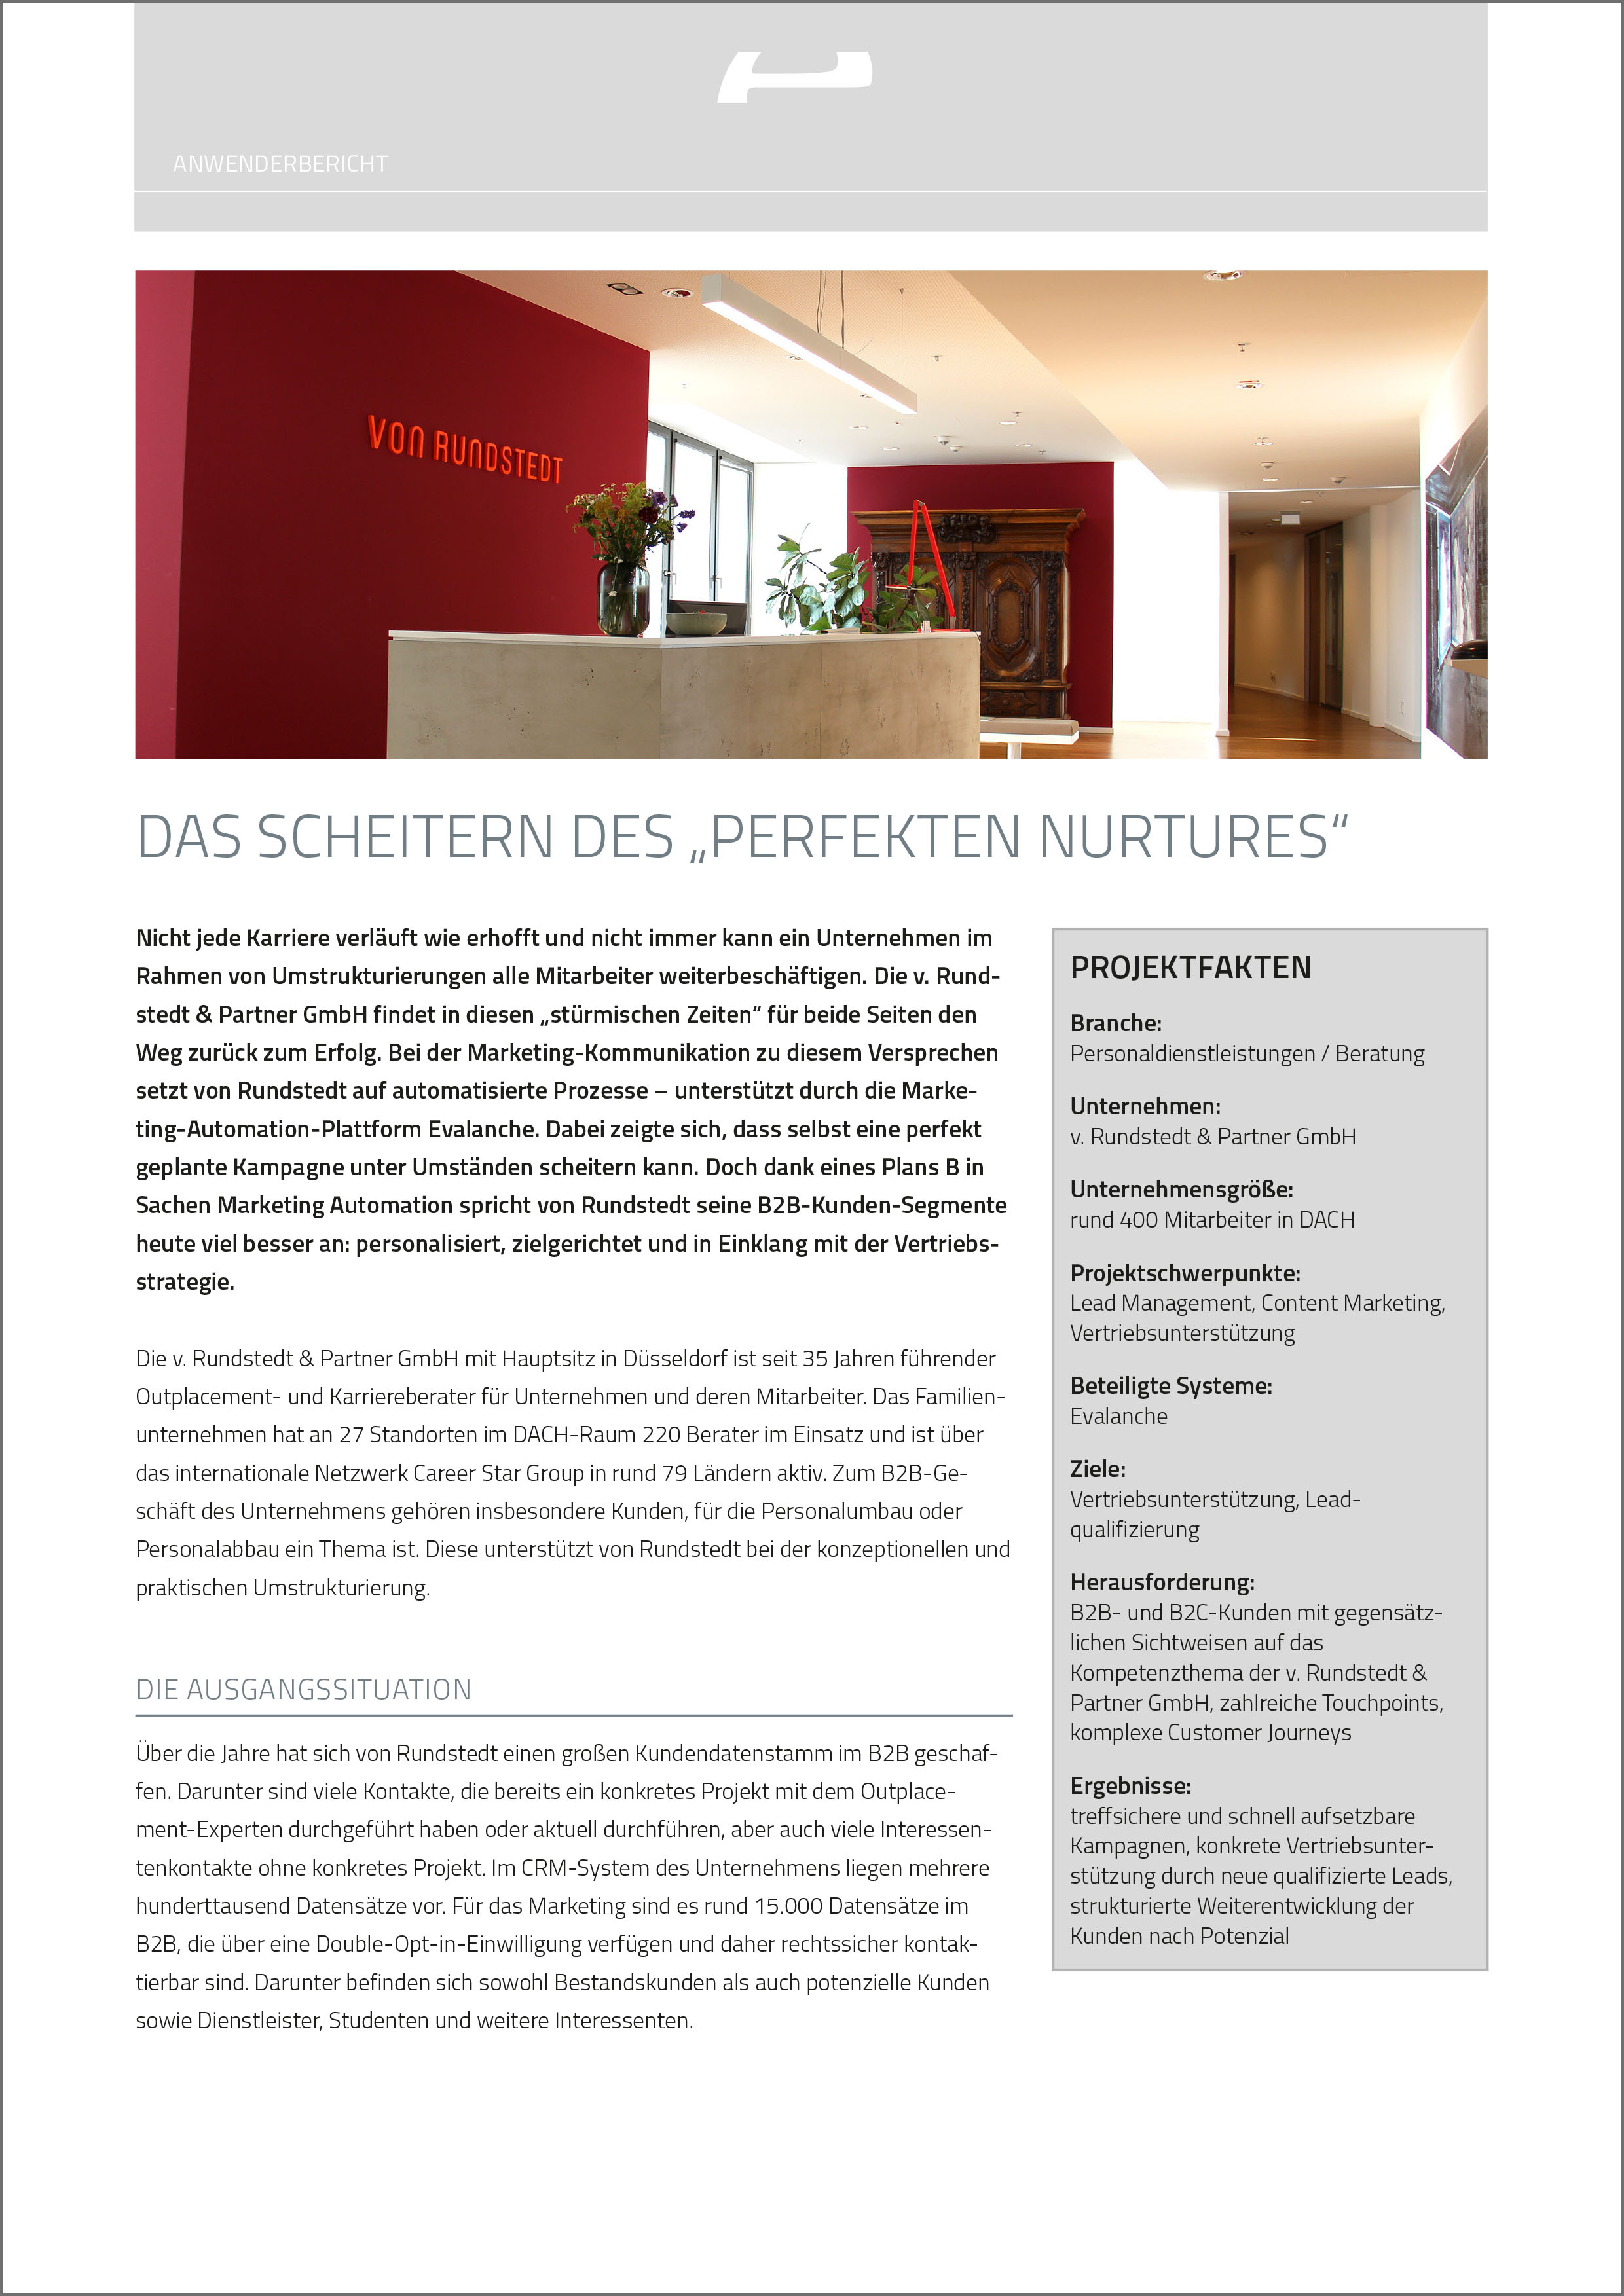 PDF Anwenderbericht mit von Rundstedt